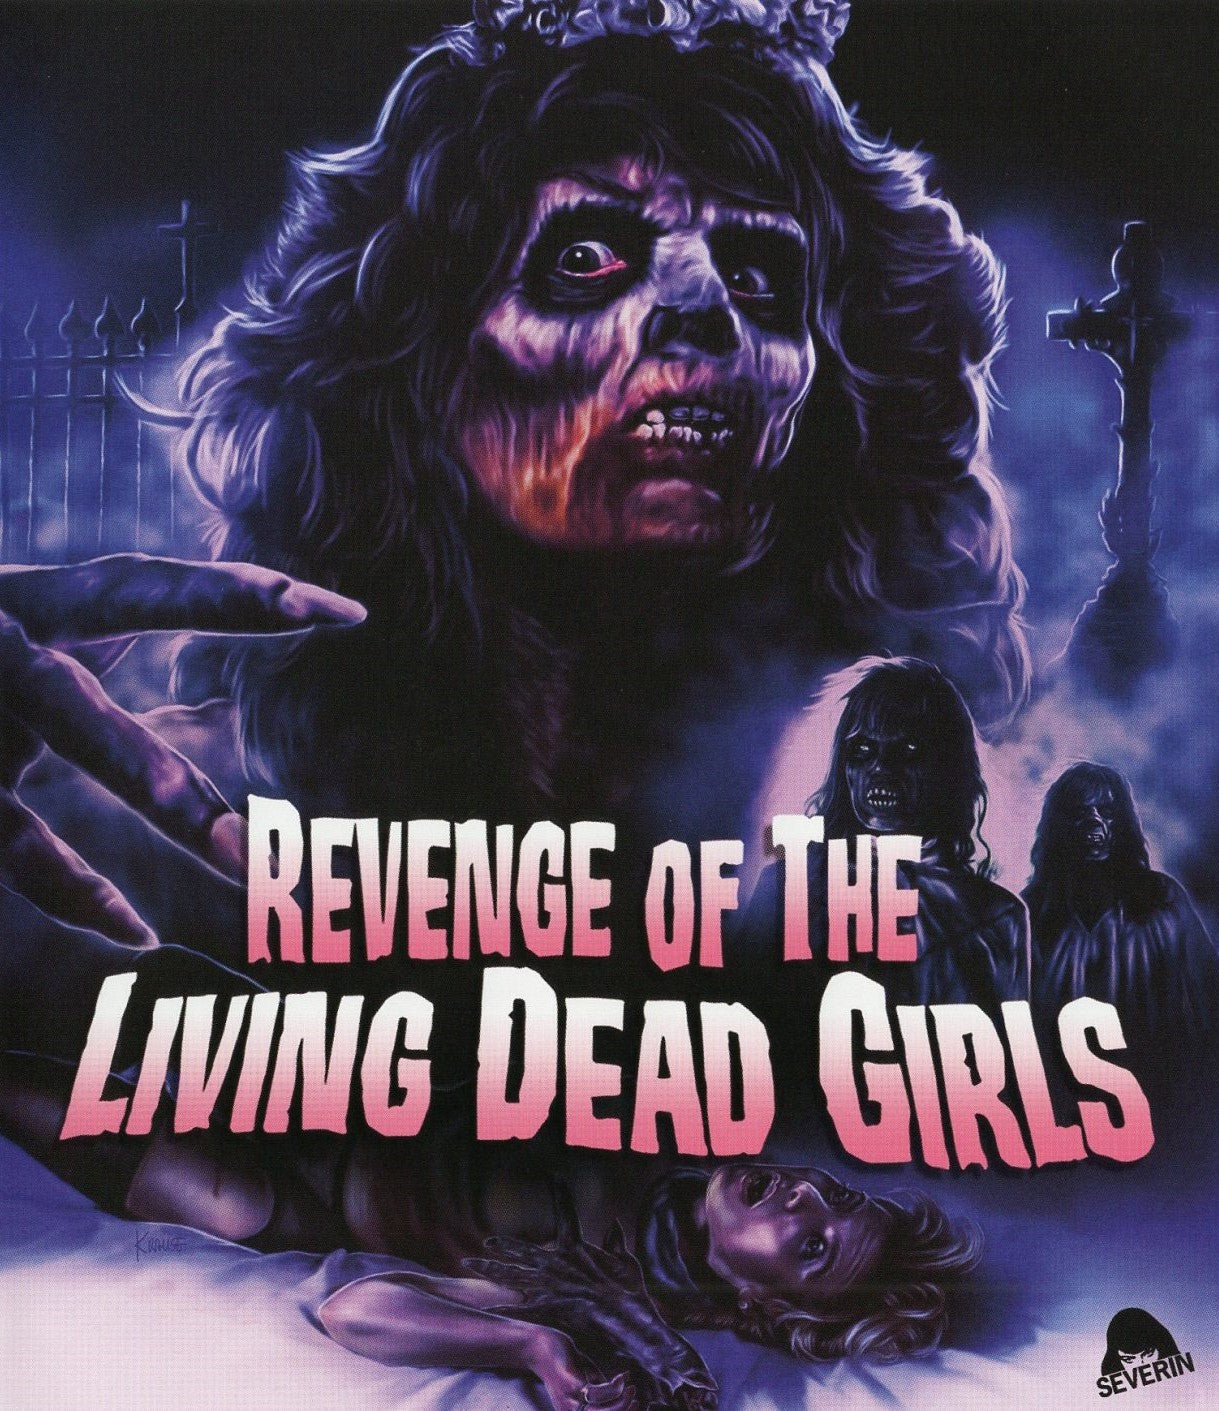 Revenge Of The Living Dead Girls Blu-Ray Blu-Ray